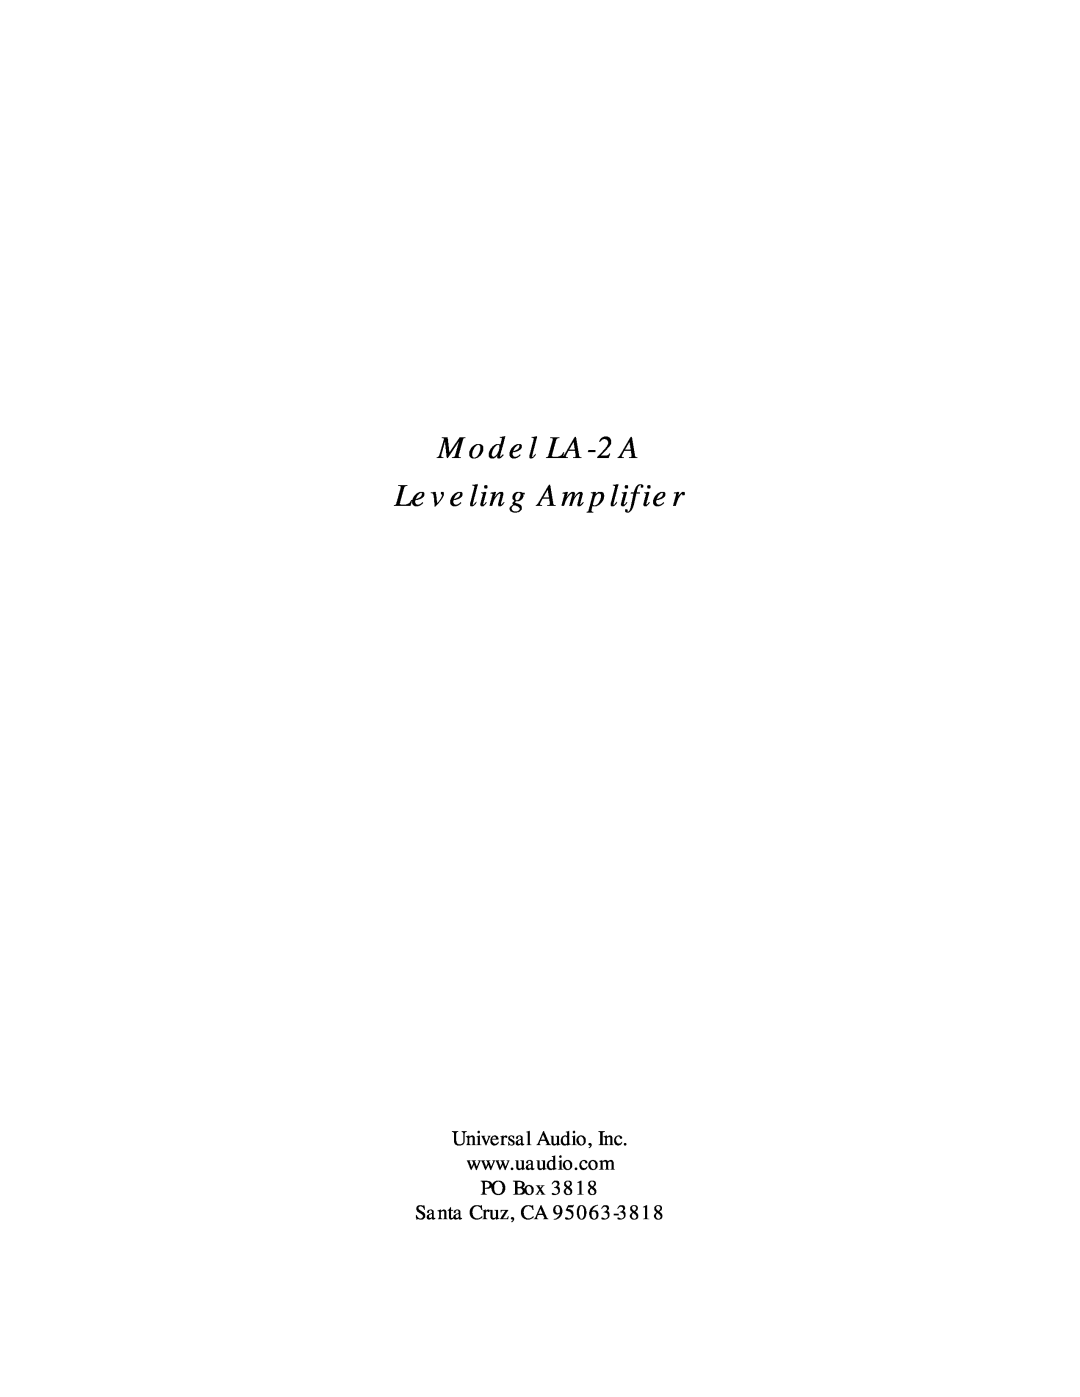 Inova manual Model LA-2A Leveling Amplifier, Santa Cruz, CA 